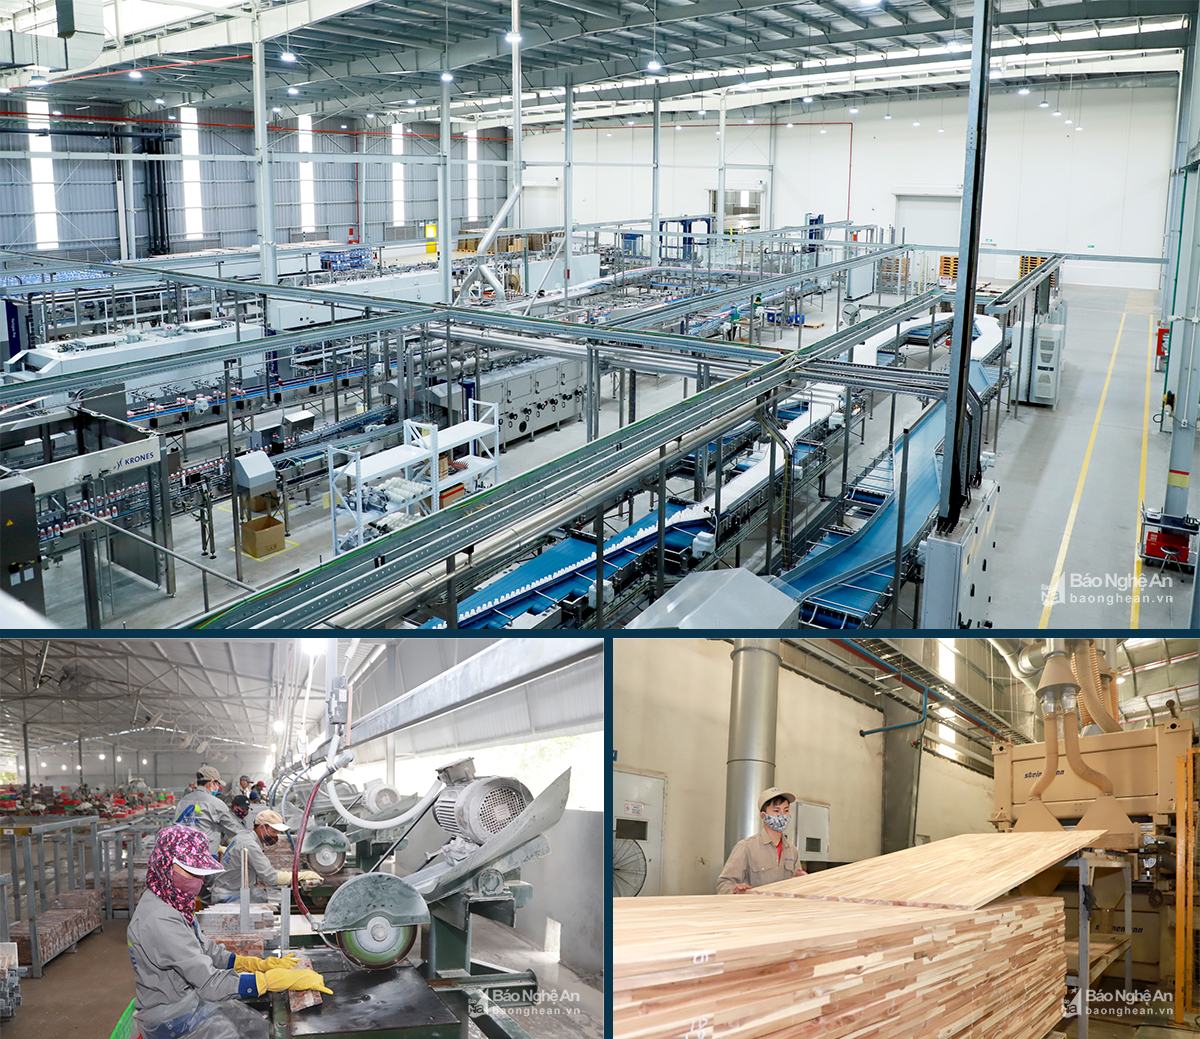 Sản xuất tại Nhà máy nước tinh khiết, thảo dược và hoa quả Núi Tiên; Nhà máy sản xuất đá Viet Home Stone JSC và Nhà máy chế biến gỗ thuộc Công ty Lâm nghiệp Tháng Năm.